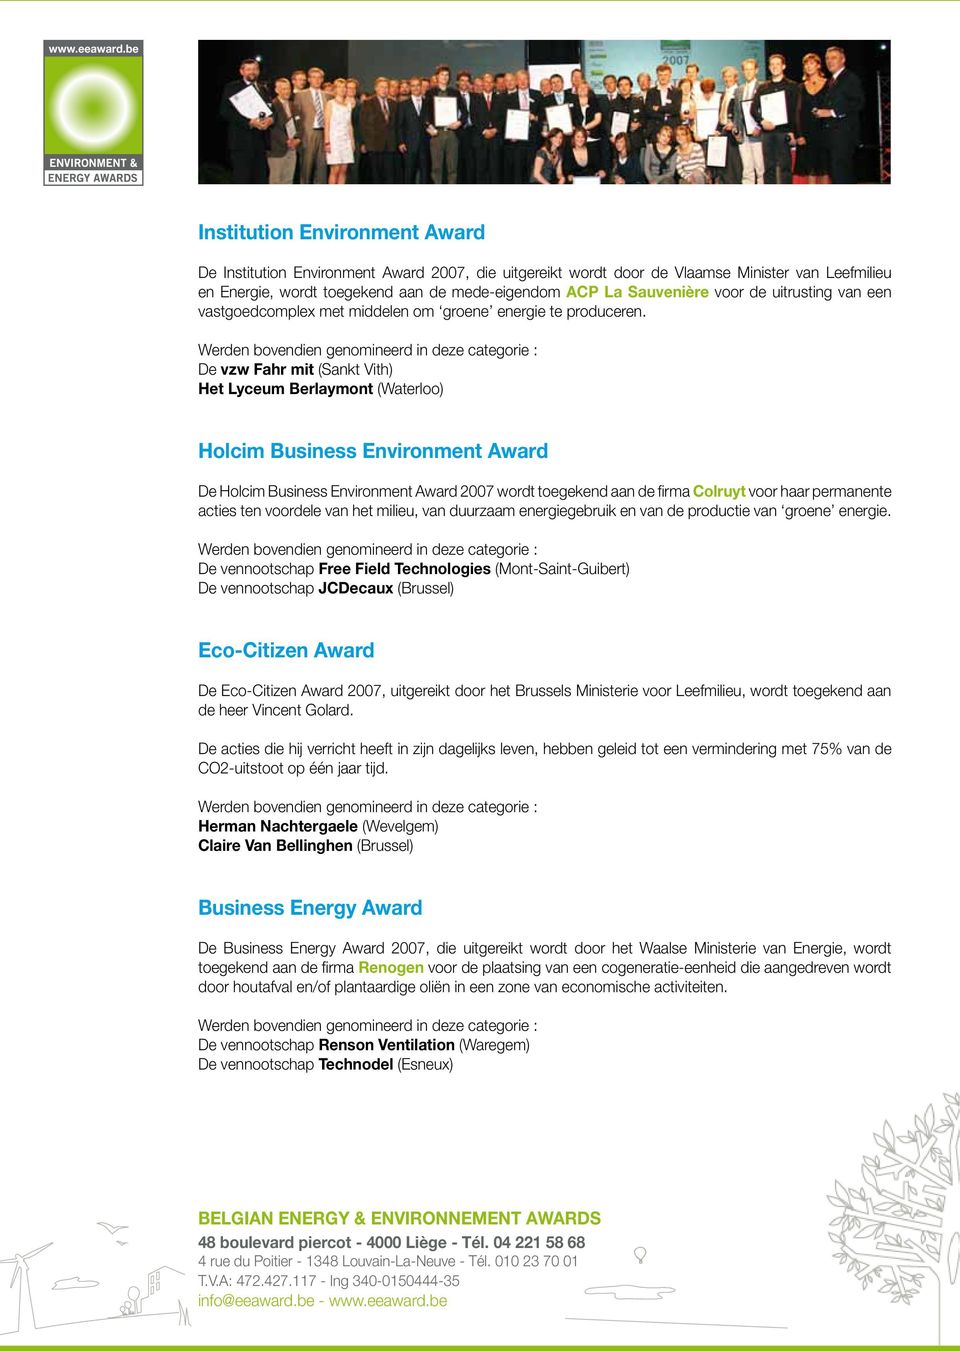 De vzw Fahr mit (Sankt Vith) Het Lyceum Berlaymont (Waterloo) Holcim Business Environment Award De Holcim Business Environment Award 2007 wordt toegekend aan de firma Colruyt voor haar permanente